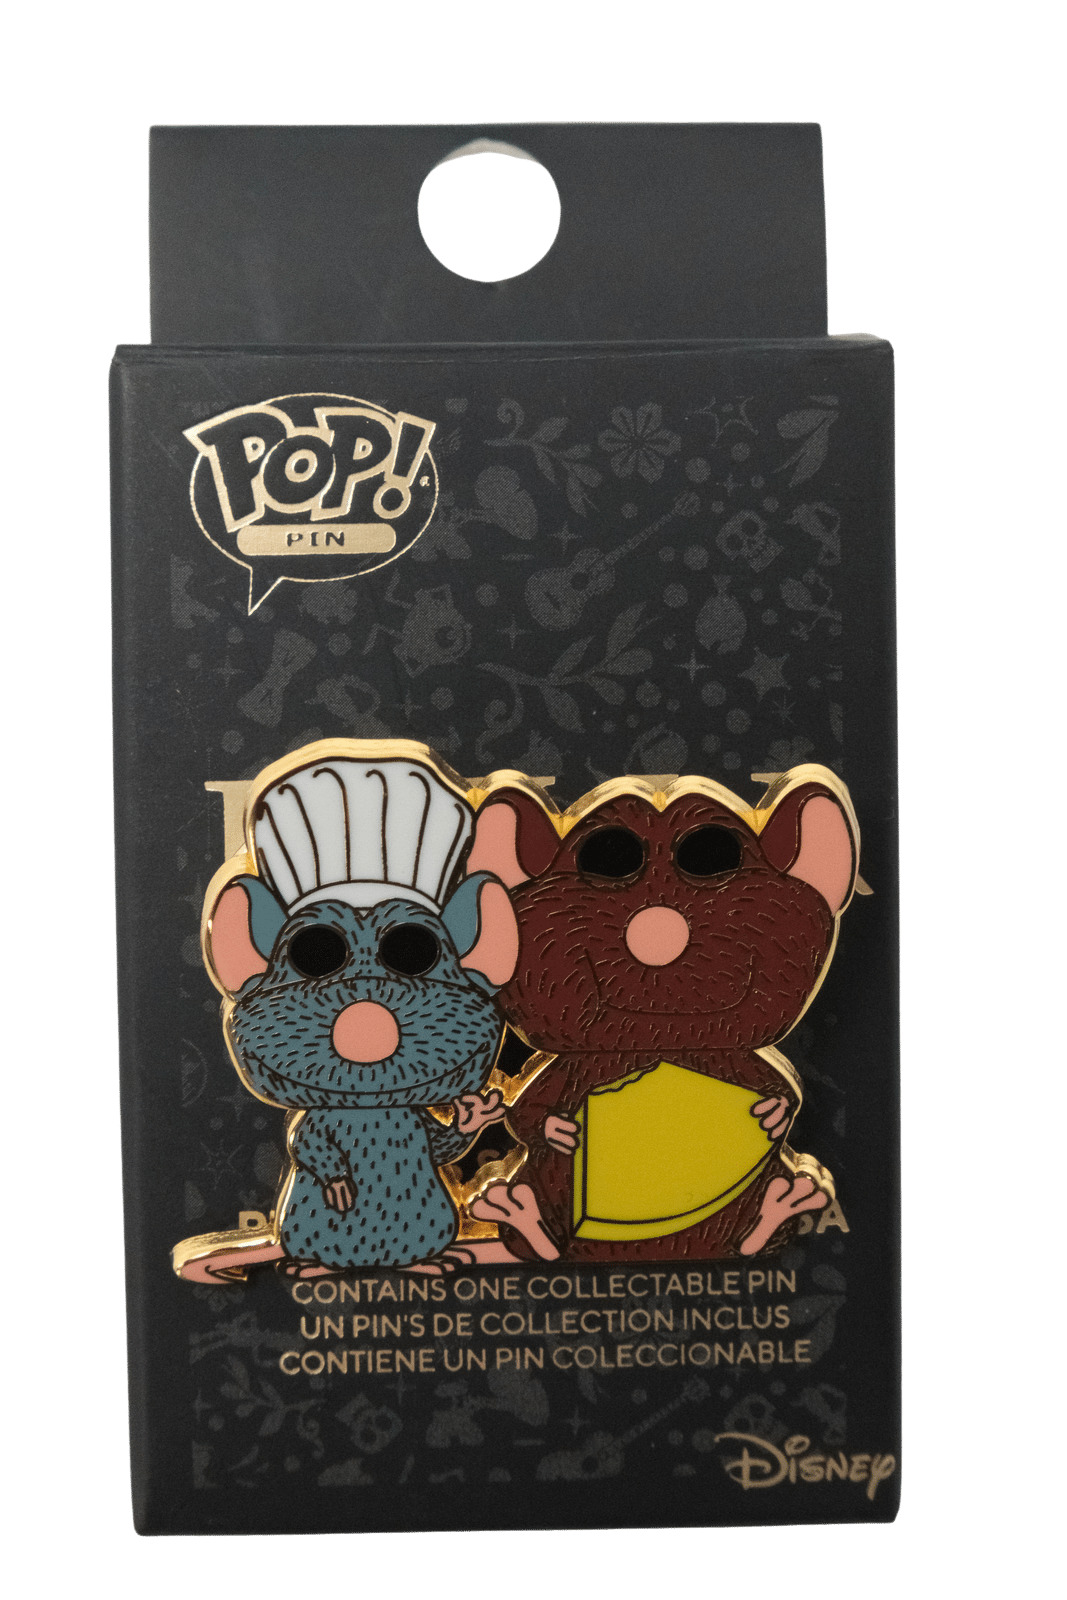 Pop Pin Disney Pixar's Ratatouille Remy and Emille Hard Enamel Pin